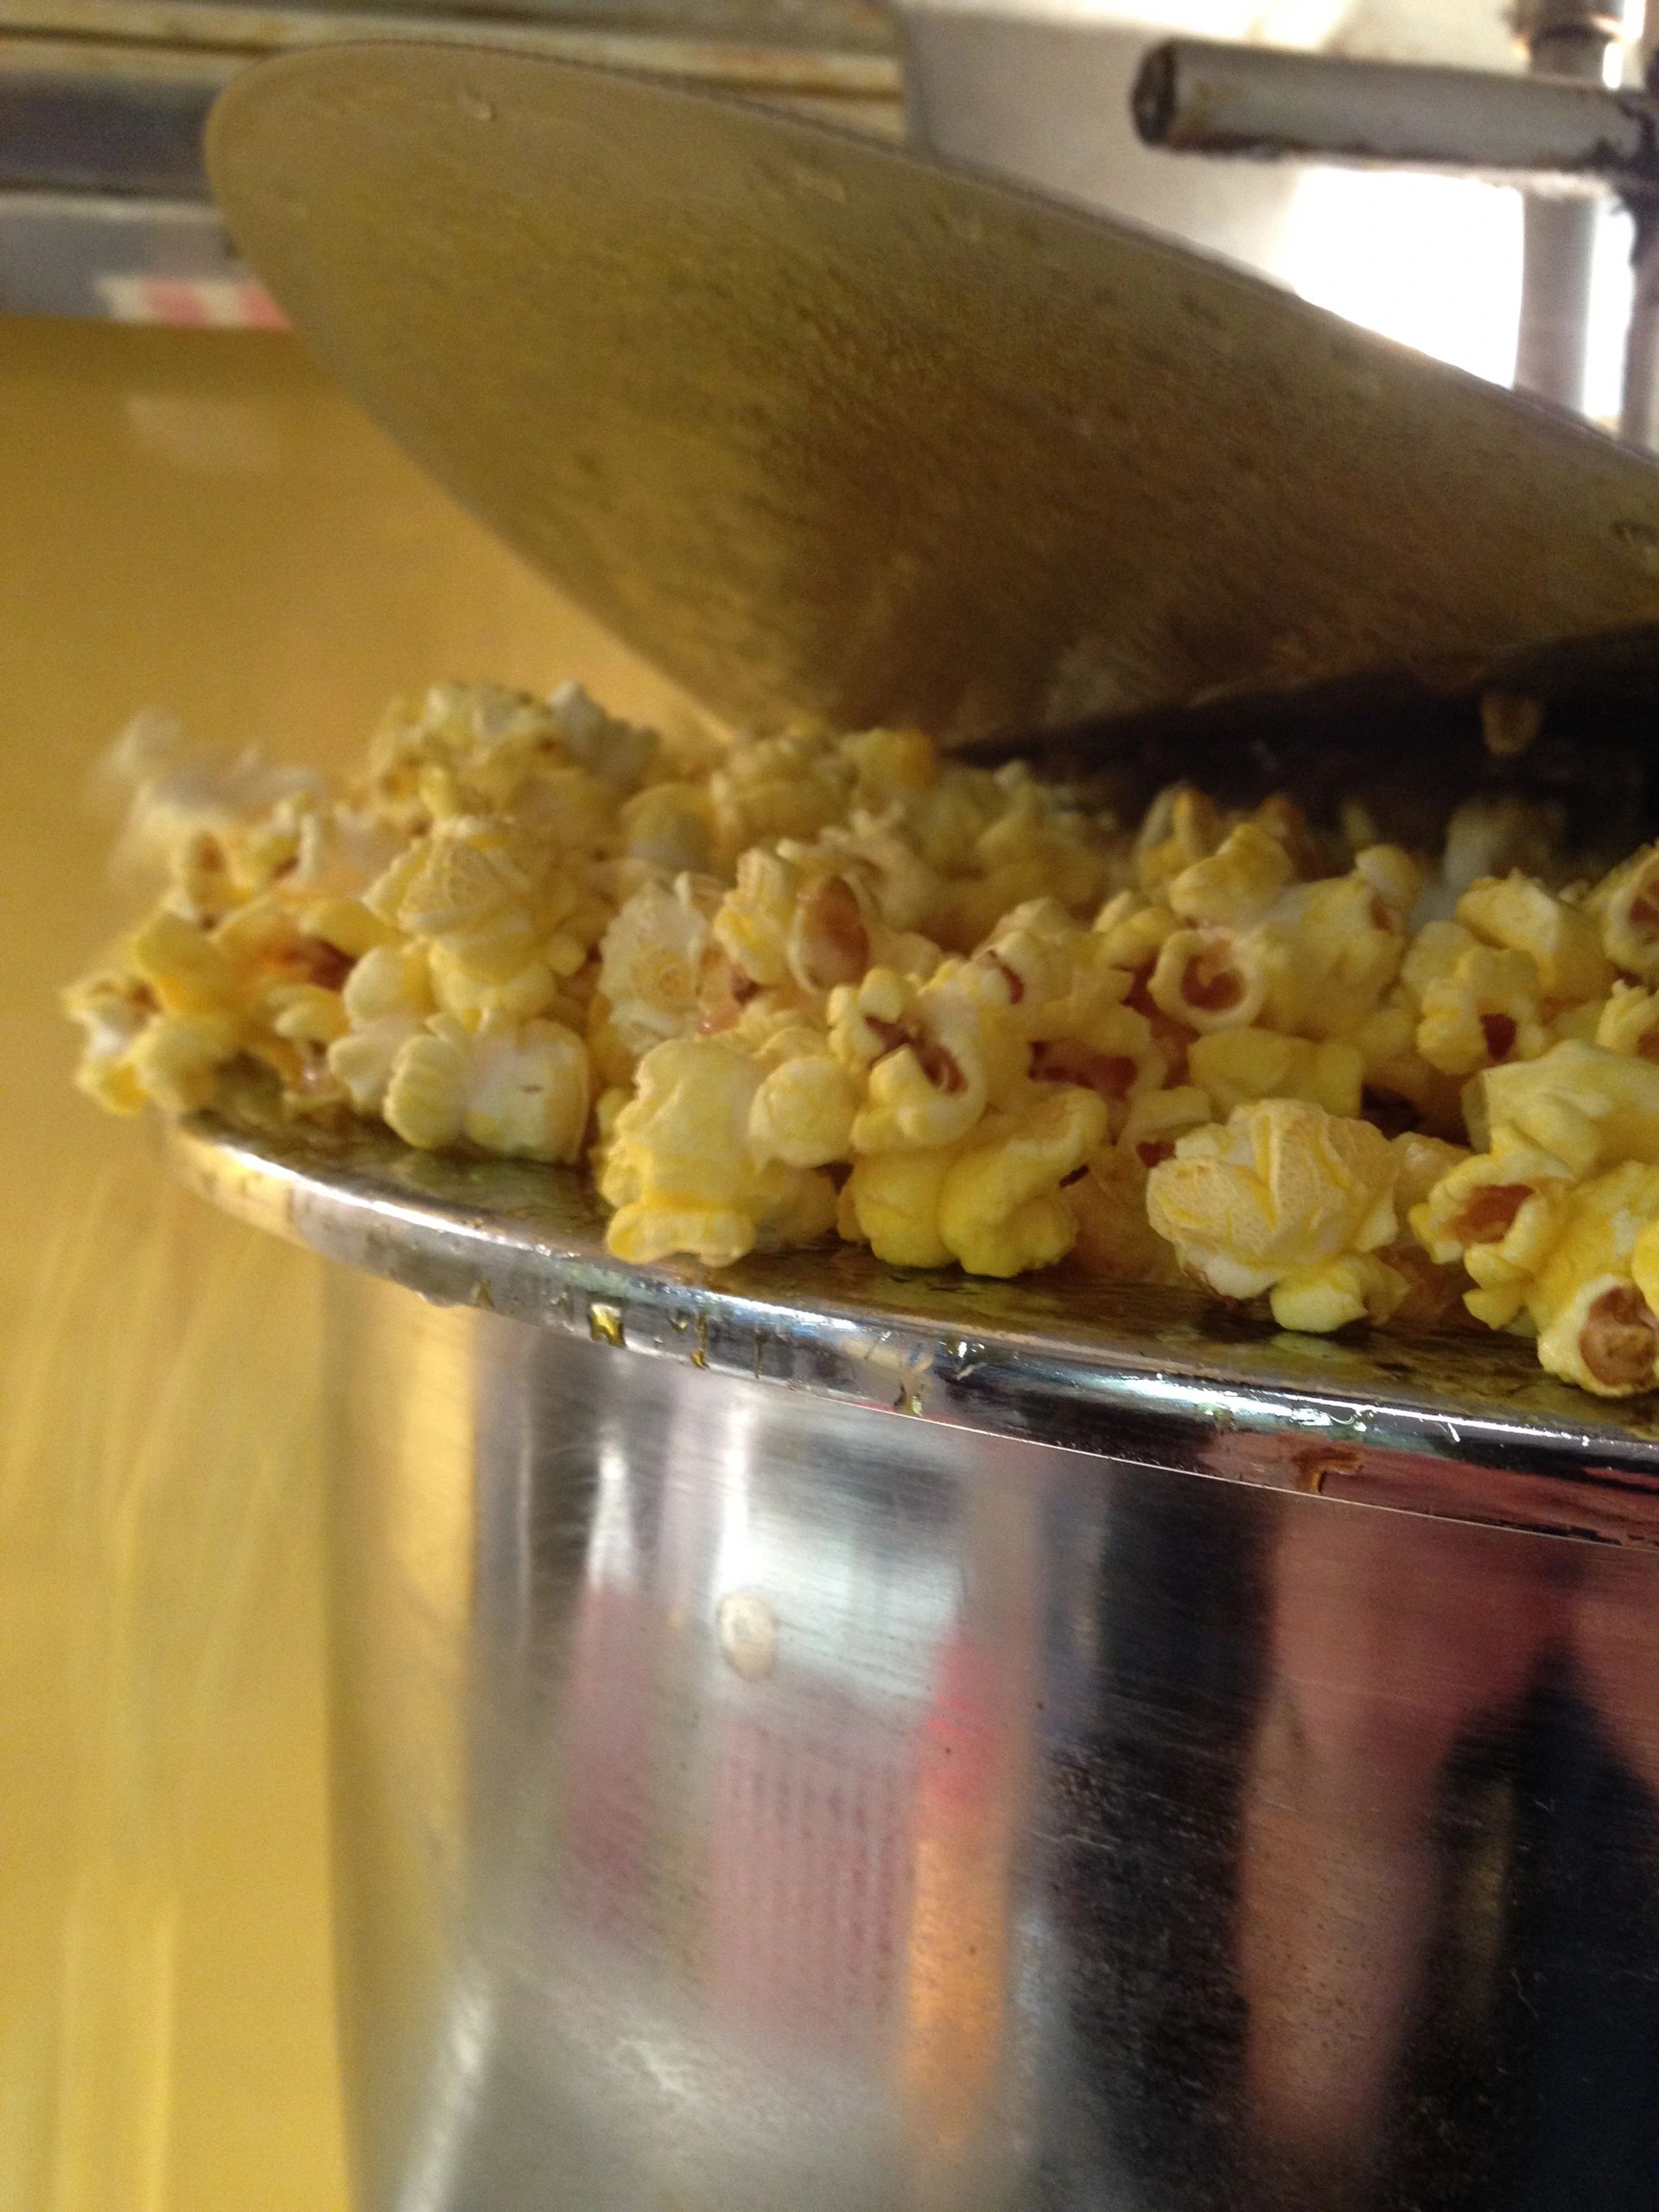 Papa's Popcorn  Clarence Center NY